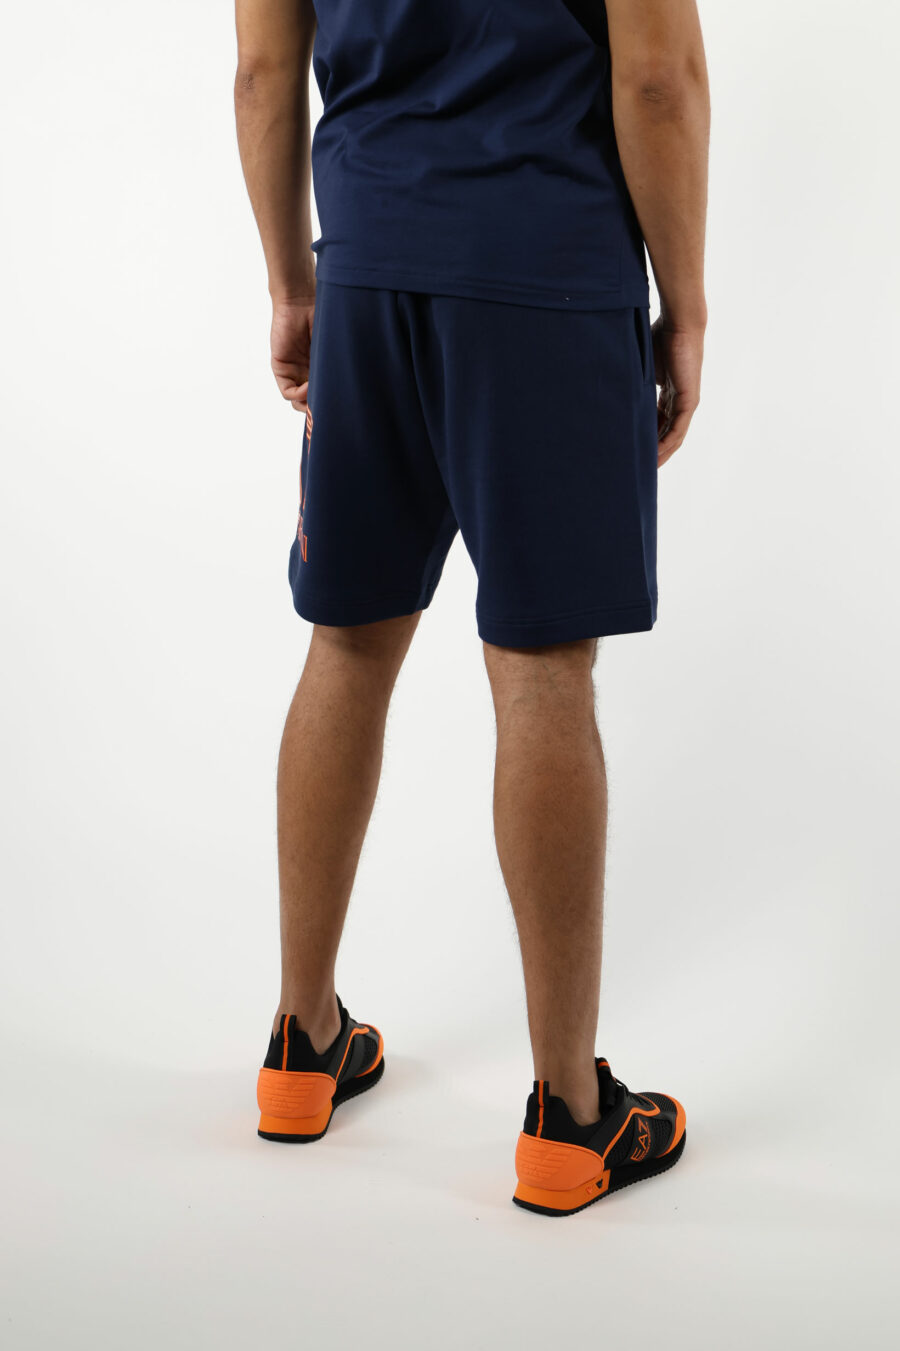 Pantalón de chándal azul oscuro con maxilogo lateral "lux identity" naranja neon - 110895